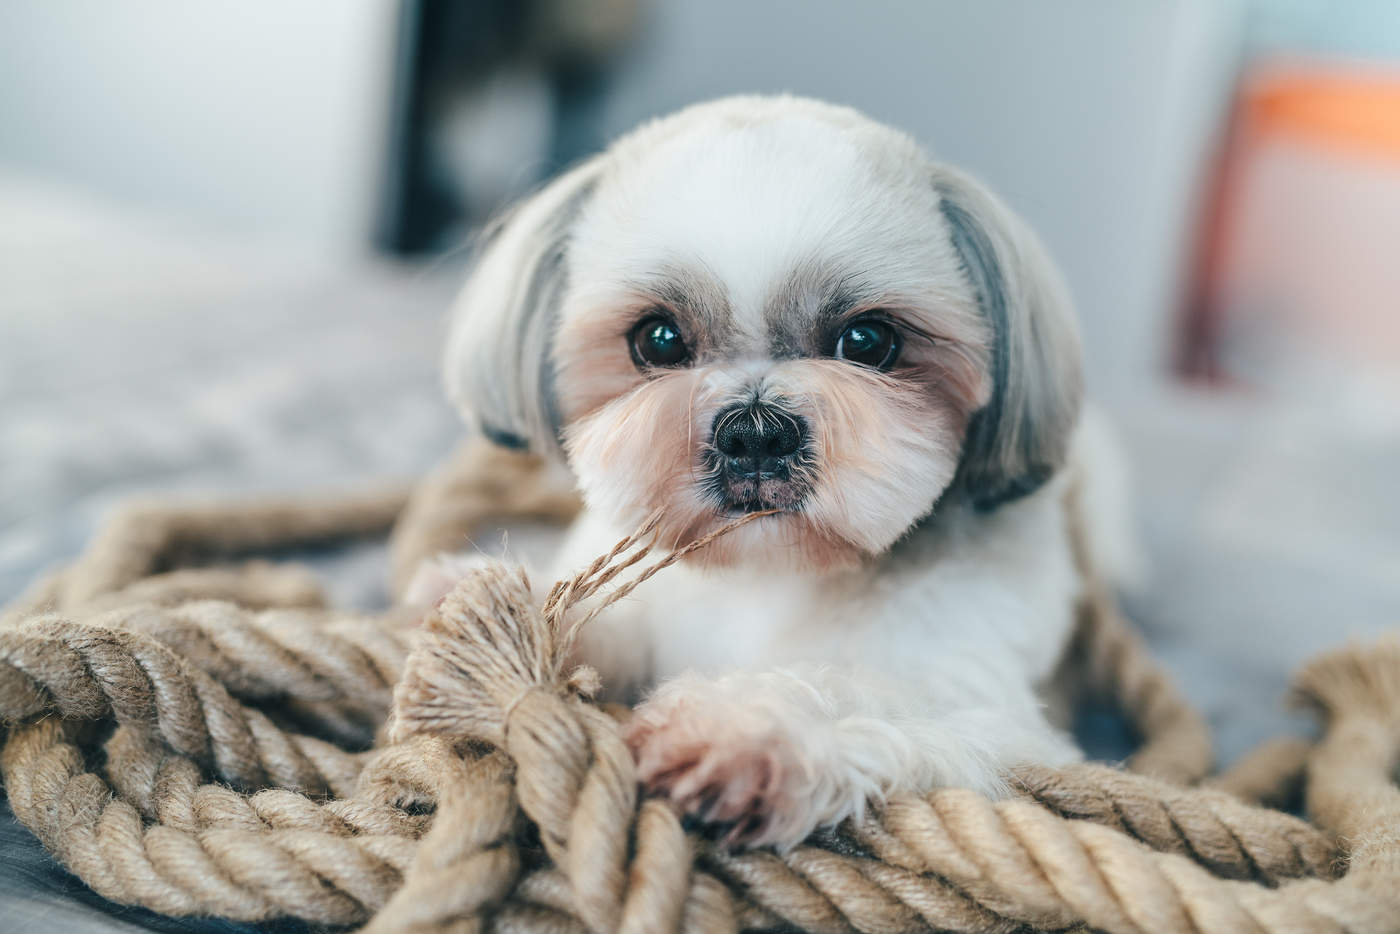 Los perros suelen morder y masticar objetos cuando estan aburridos, lo que puede ocurrir a cualquier edad y sobre todo cuando están solos en casa.  (ESPECIAL)